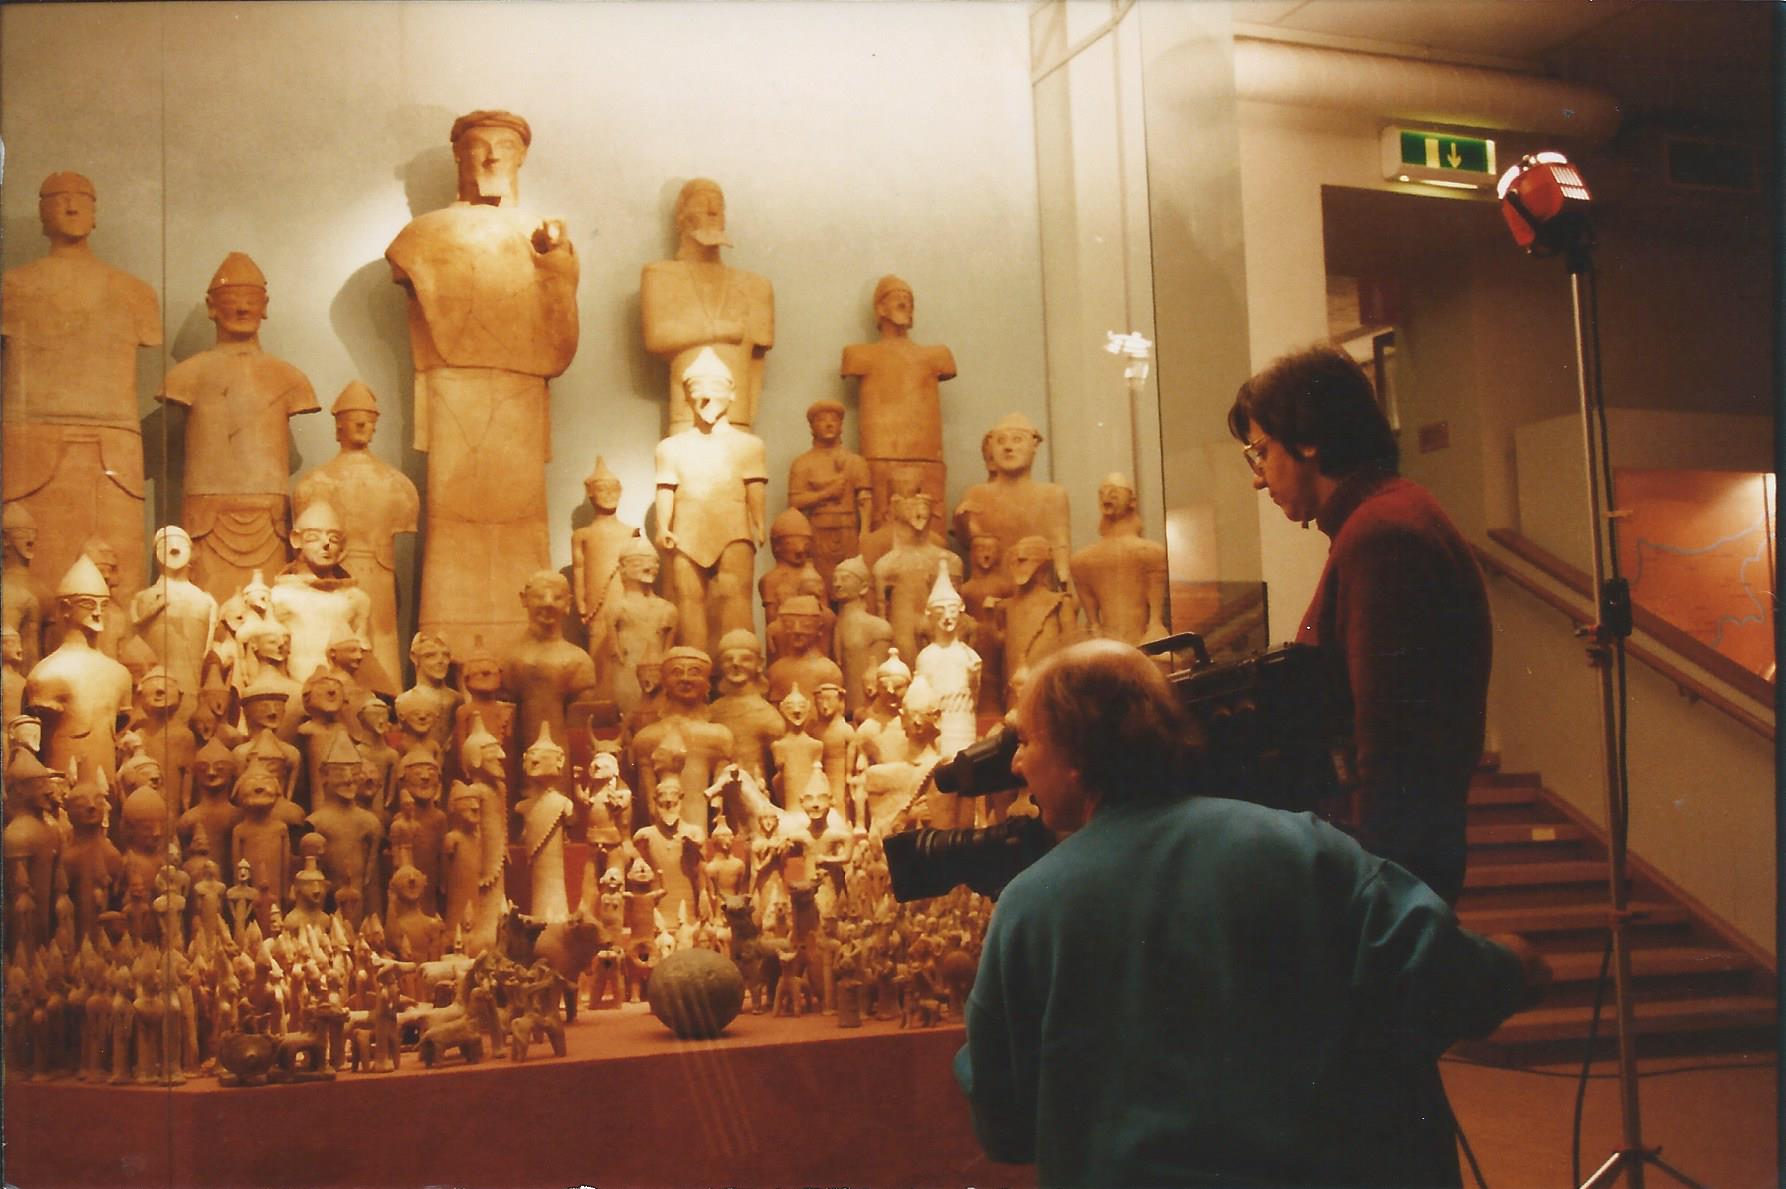 Kυπριακές αρχαιότητες στο Mεσογειακό Mουσείο της Στοκχόλμης